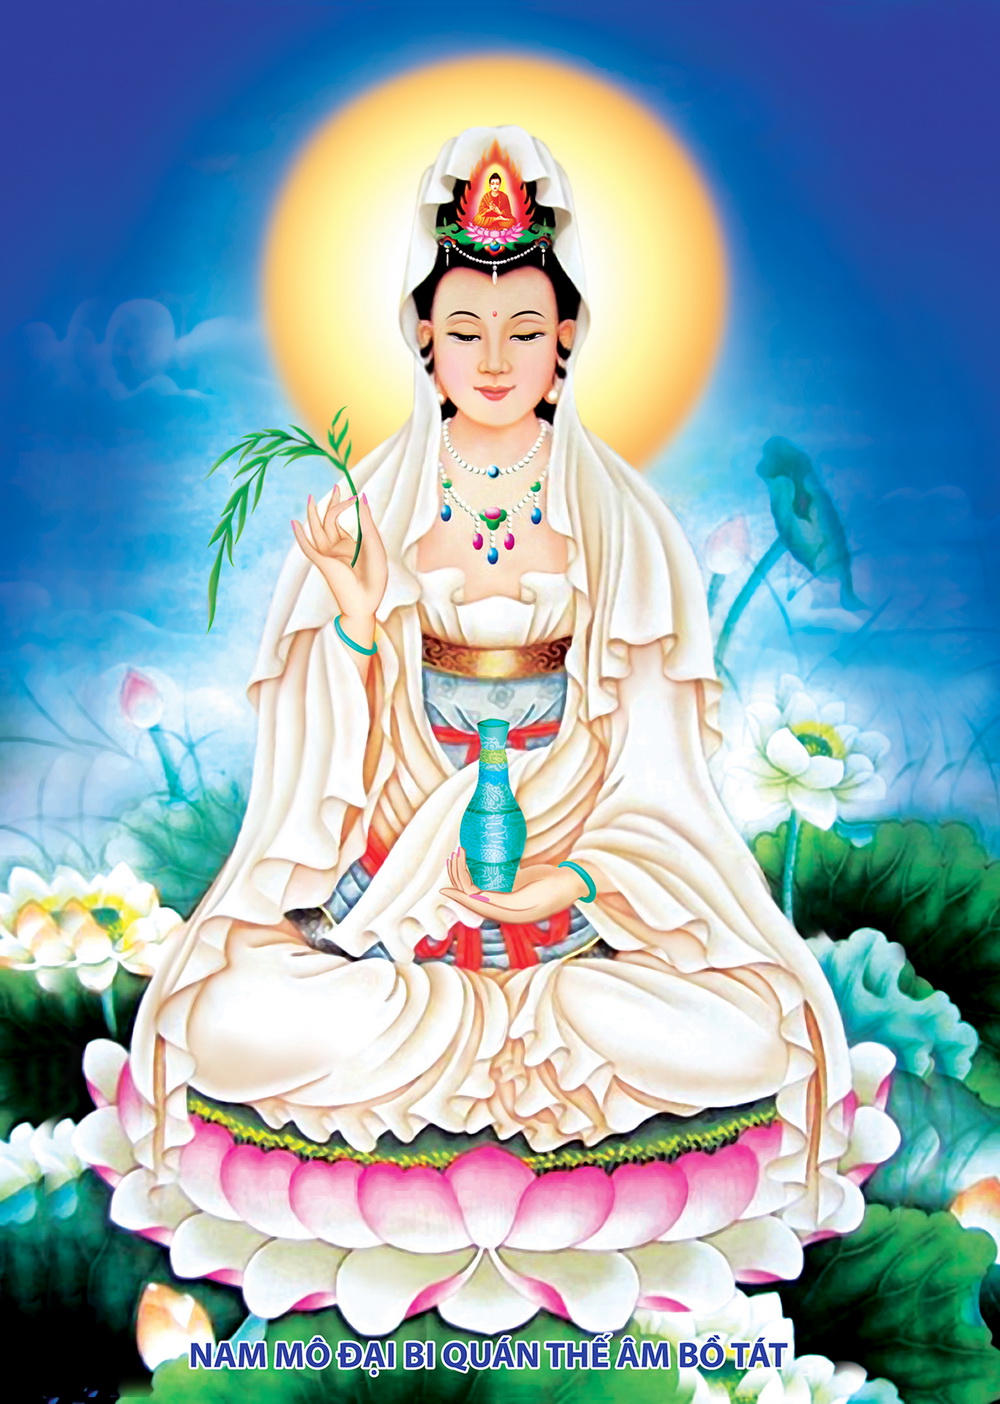 Hình ảnh Phật Quan Thế Âm Bồ Tát đẹp